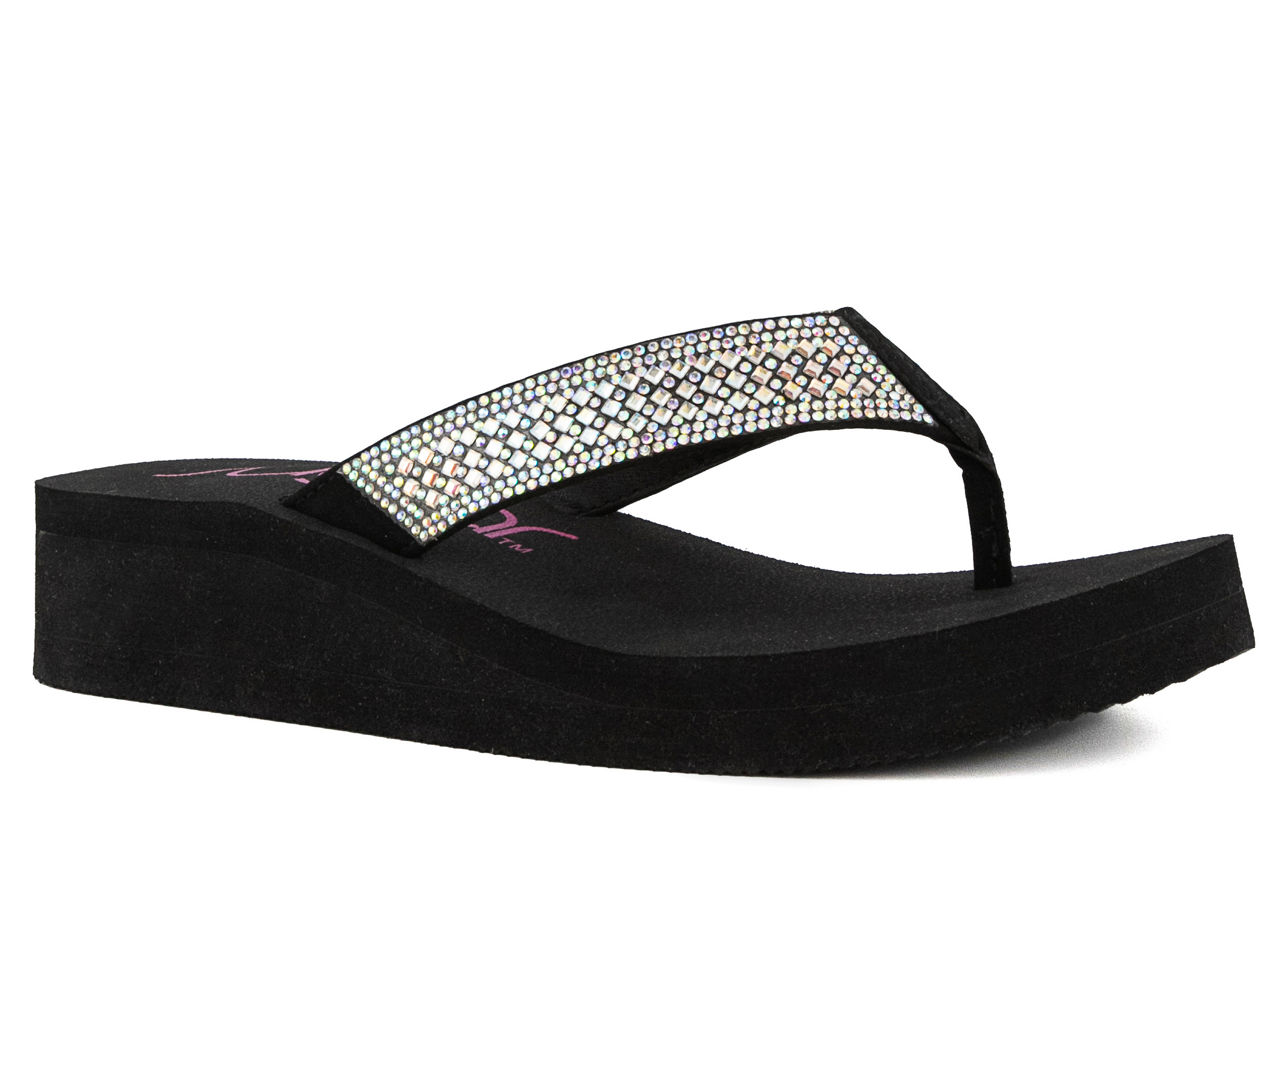 Skechers yoga foam flip flop women's size 8 black sandal wedge